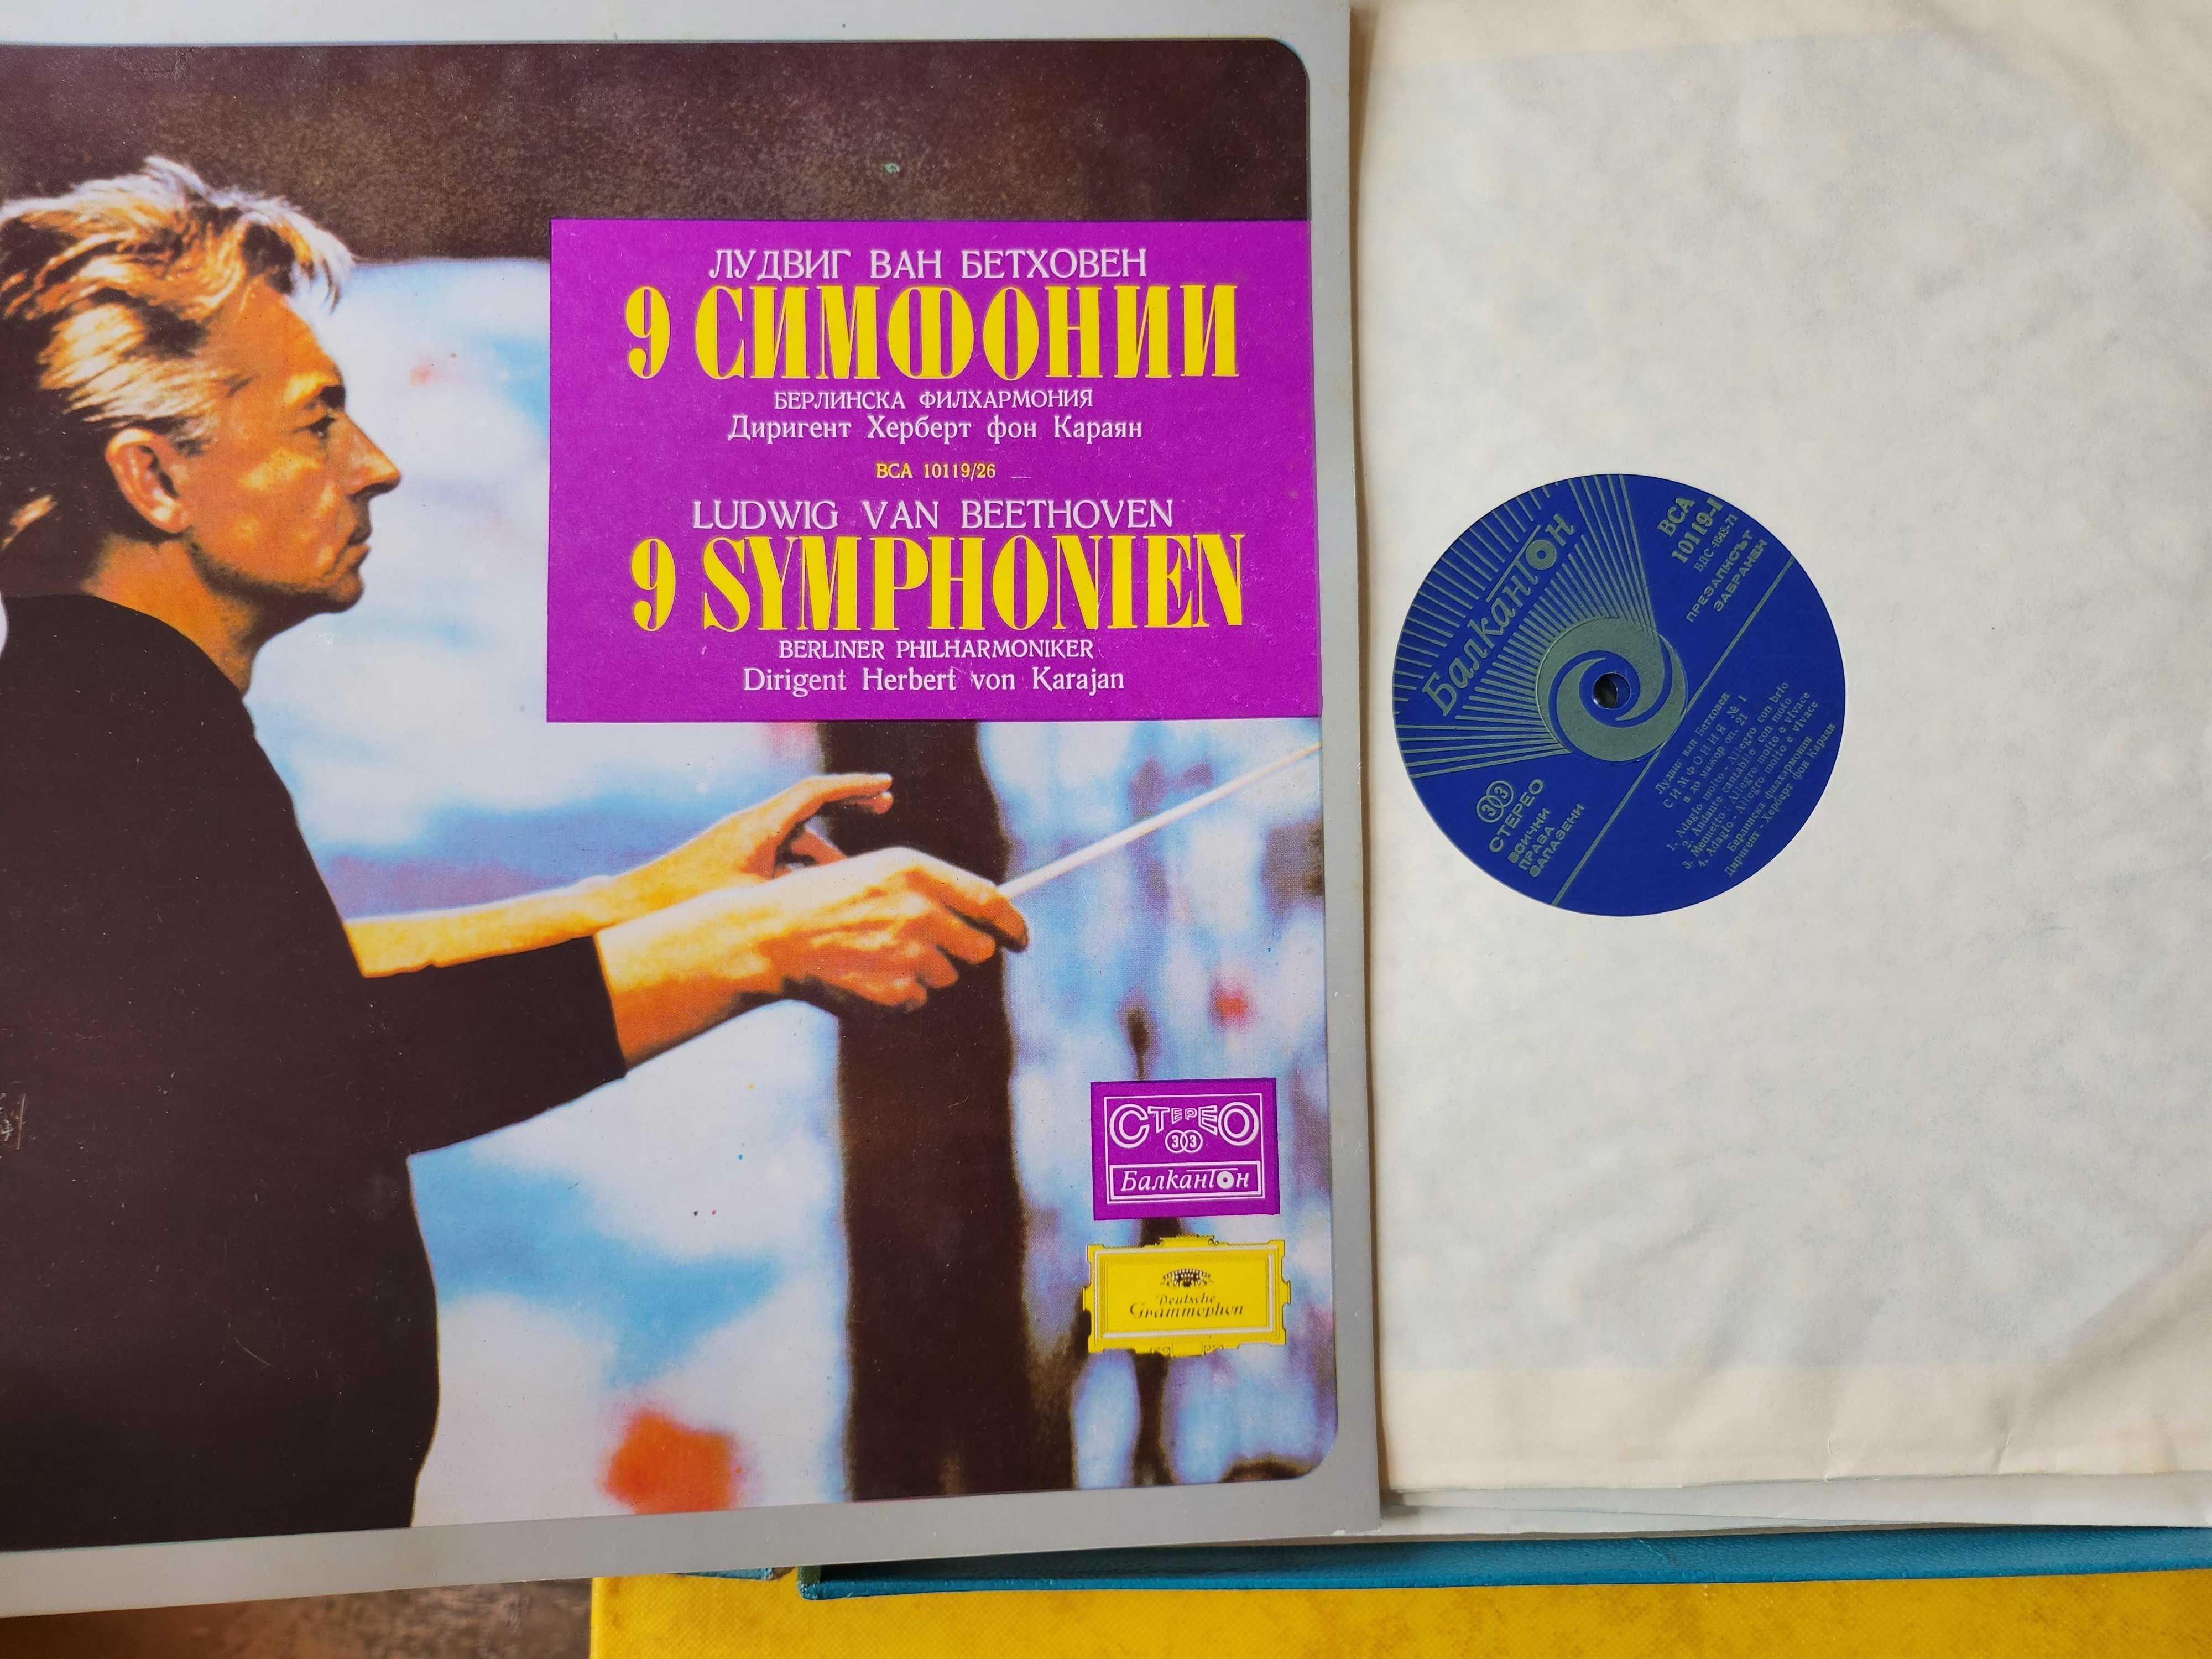 Бетховен - 9 симфонии, 8 LP vinyl, дирижира Караян и "Тоска" с Карерас